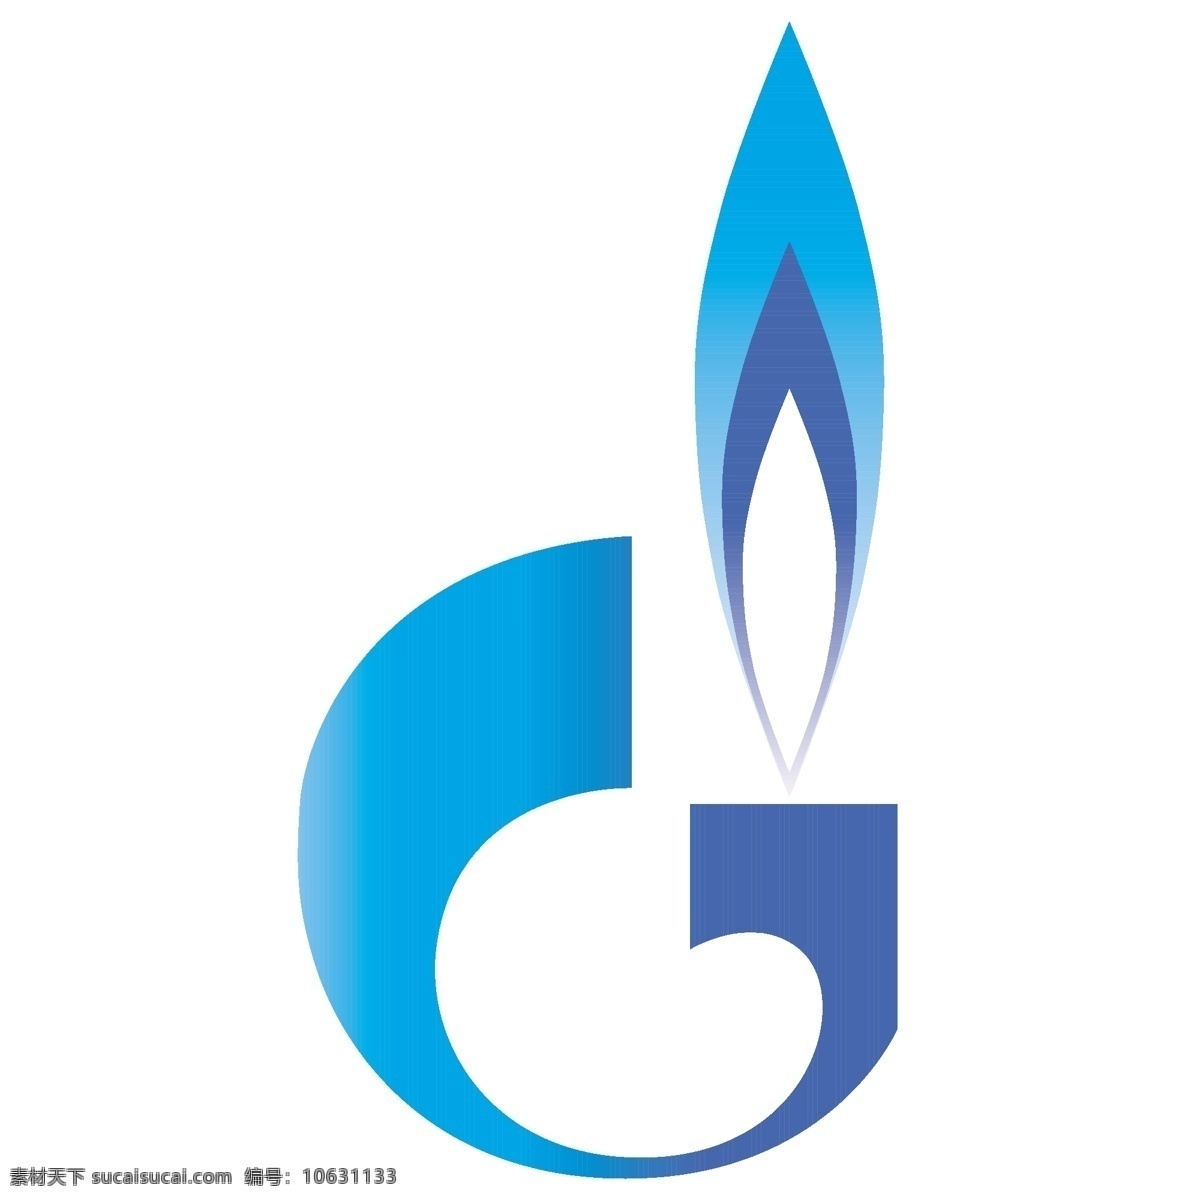 俄罗斯 天然气 工业 股份公司 标识 公司 免费 品牌 品牌标识 商标 矢量标志下载 免费矢量标识 矢量 psd源文件 logo设计